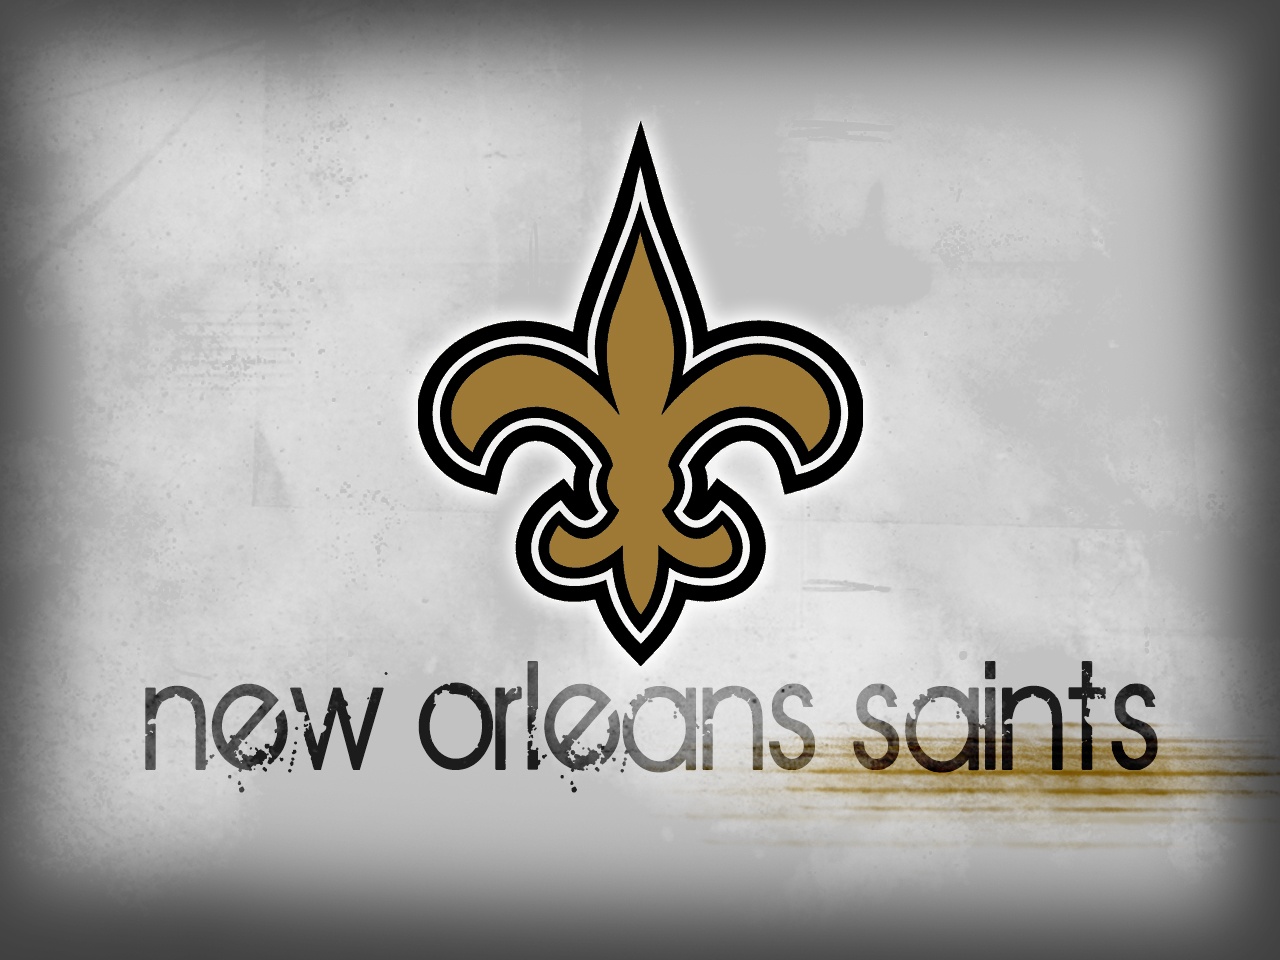 Orleans Saints Wallpaper New